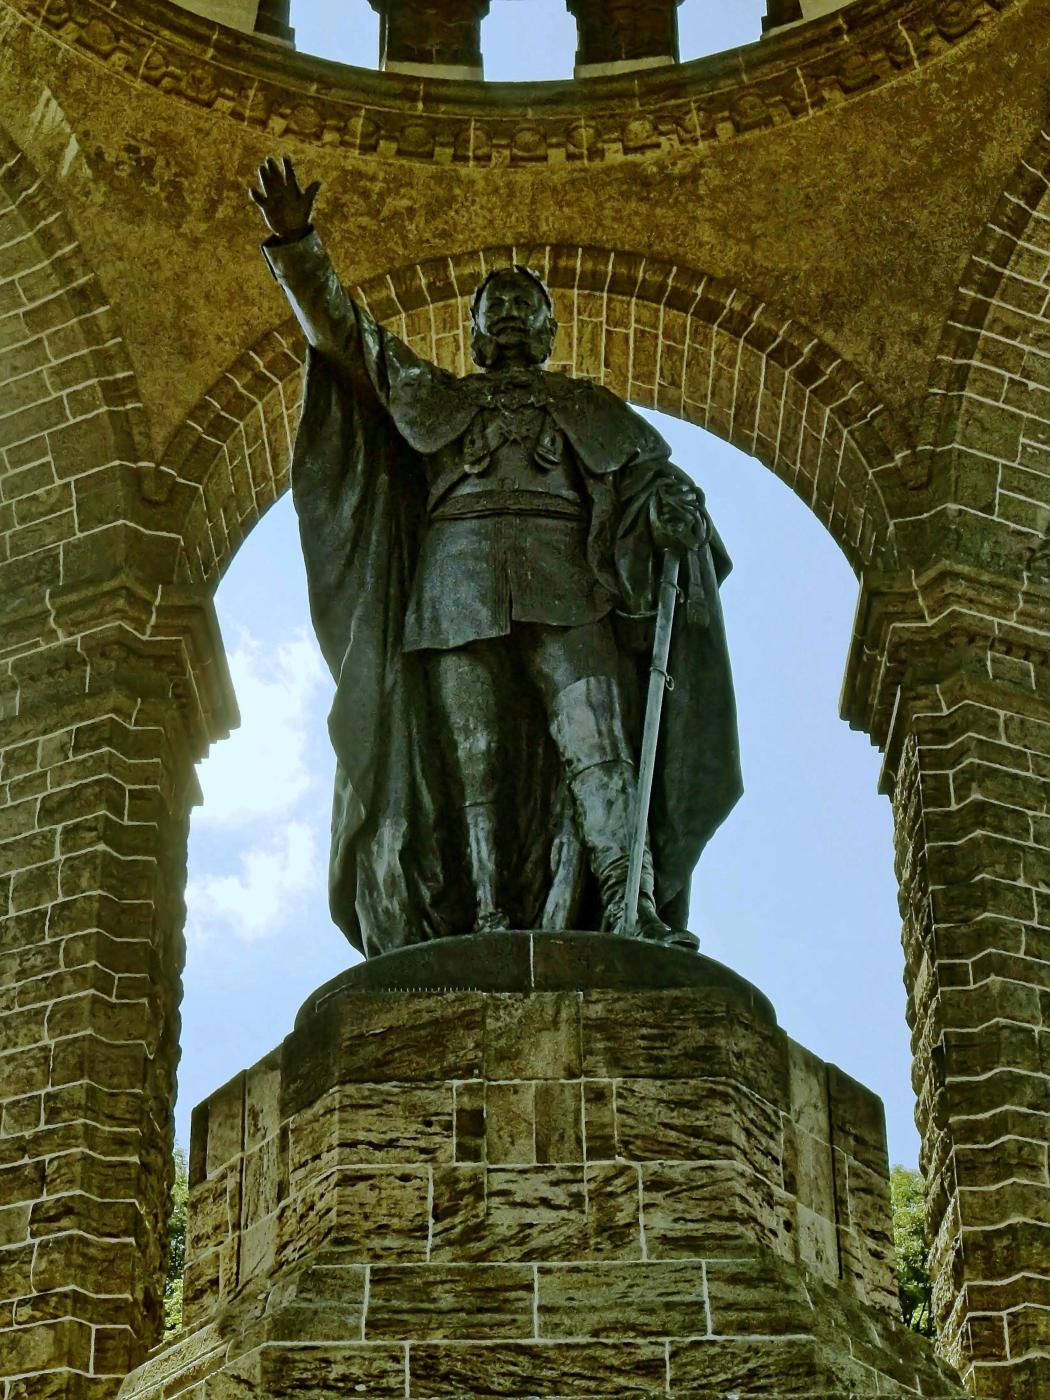 Kaiser Wilhelm